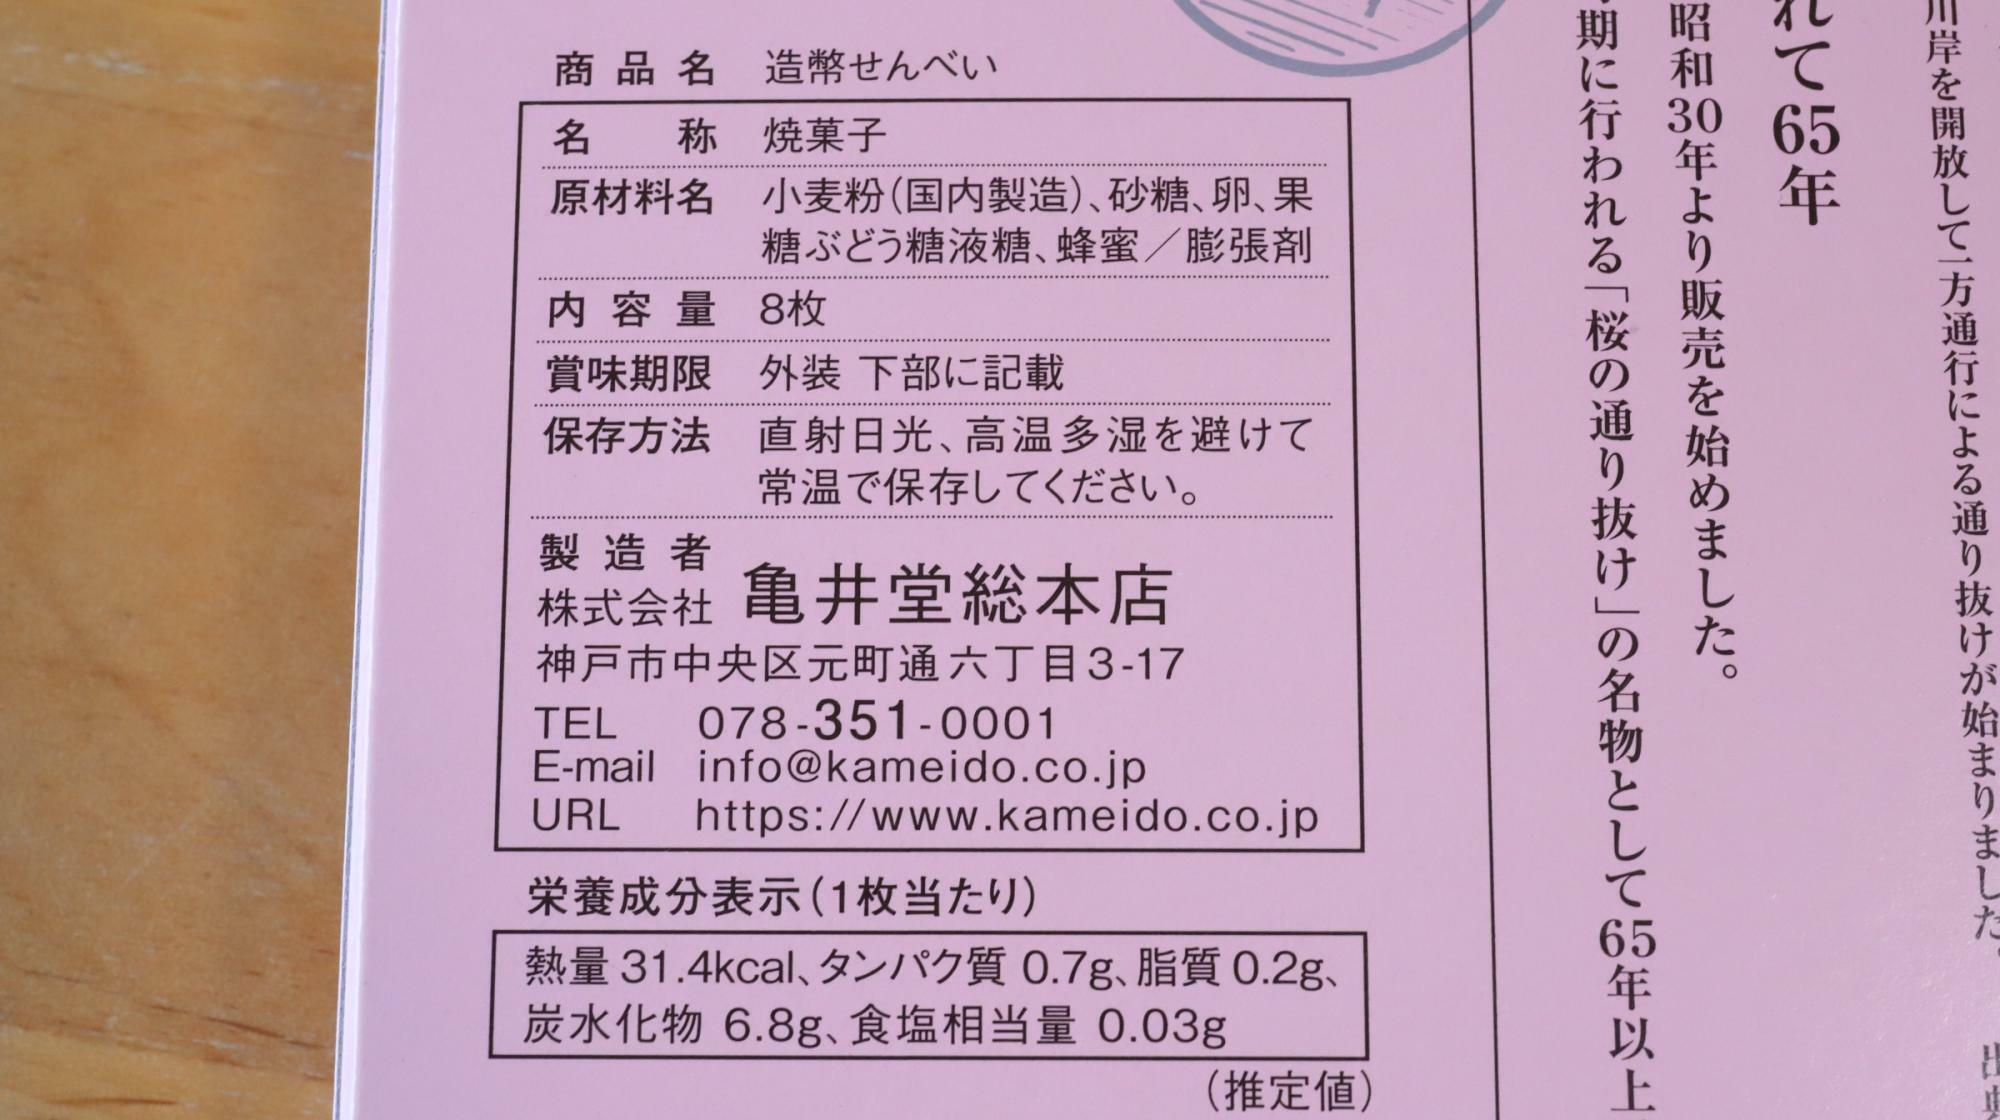 亀井堂総本店の造幣せんべい、原材料等の情報